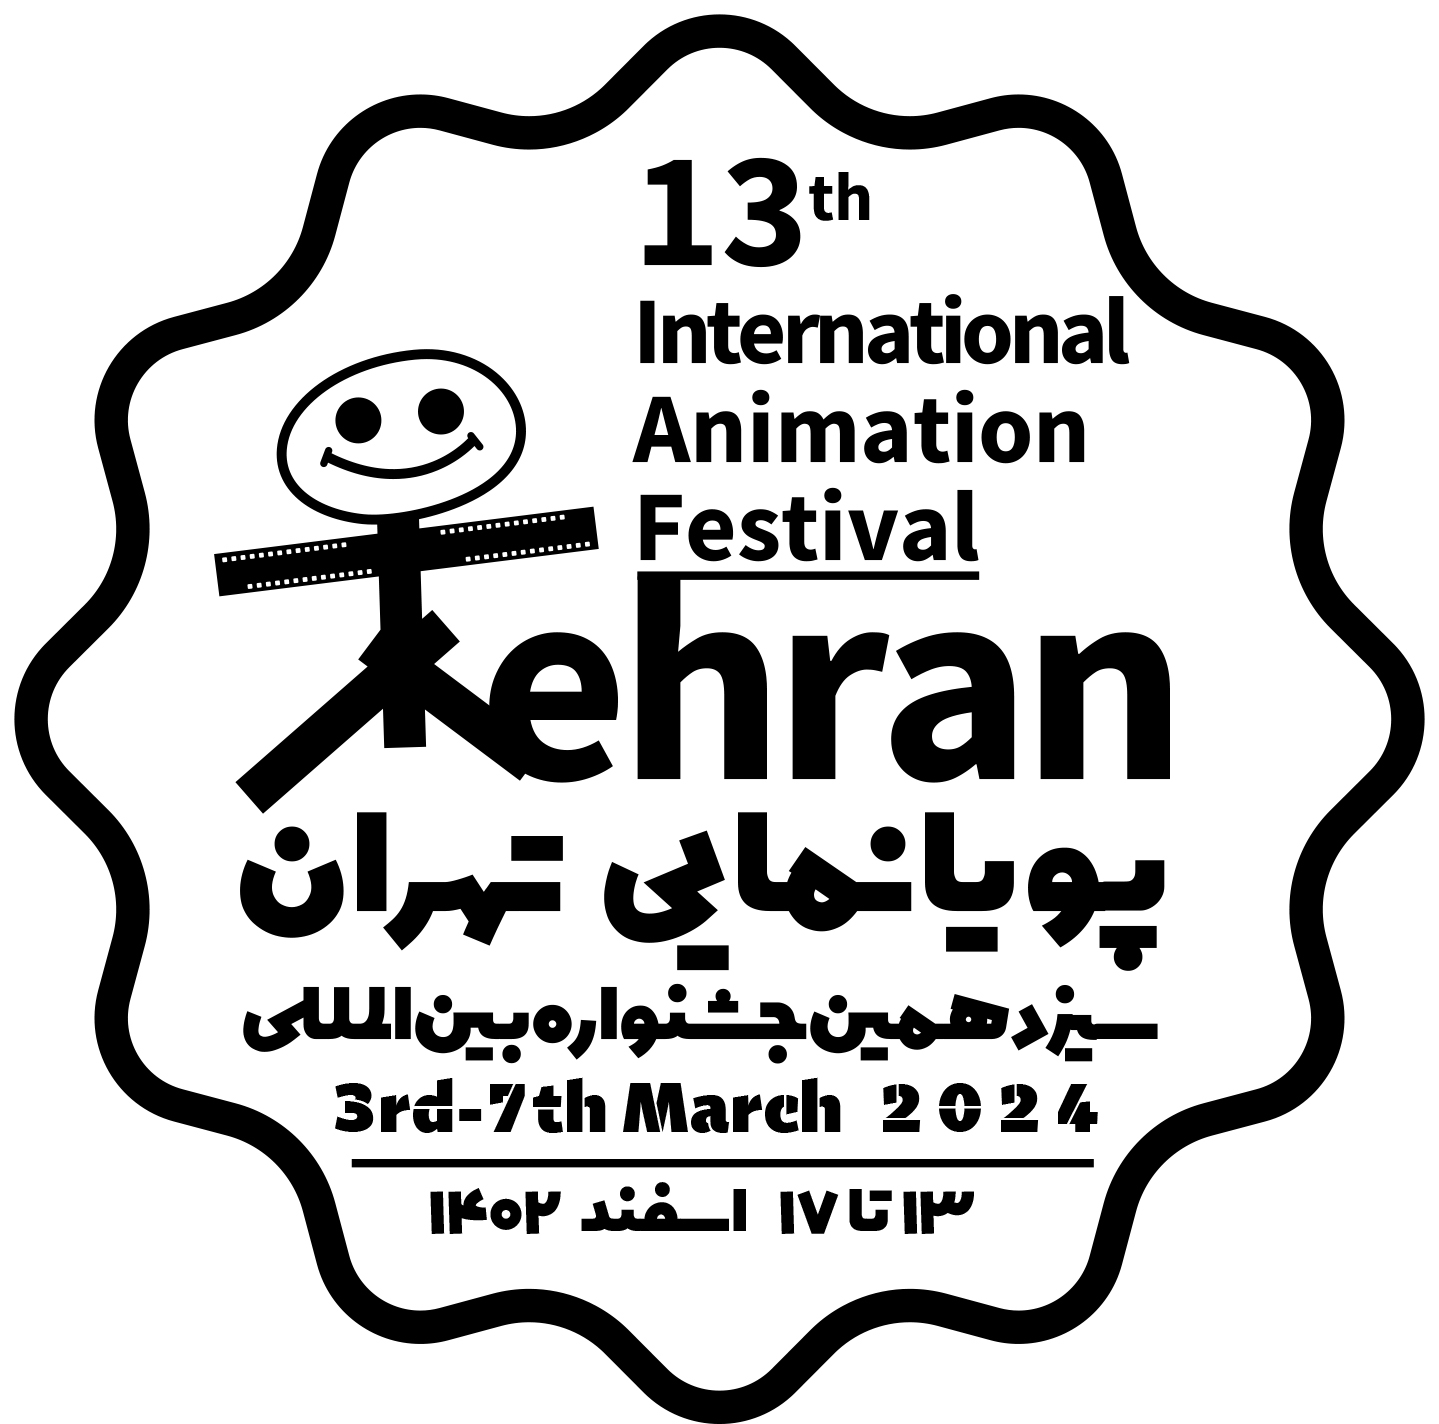  سیزدهمین جشنواره پویانمایی تهران با حضور دو وزیر دولت به پایان رسید